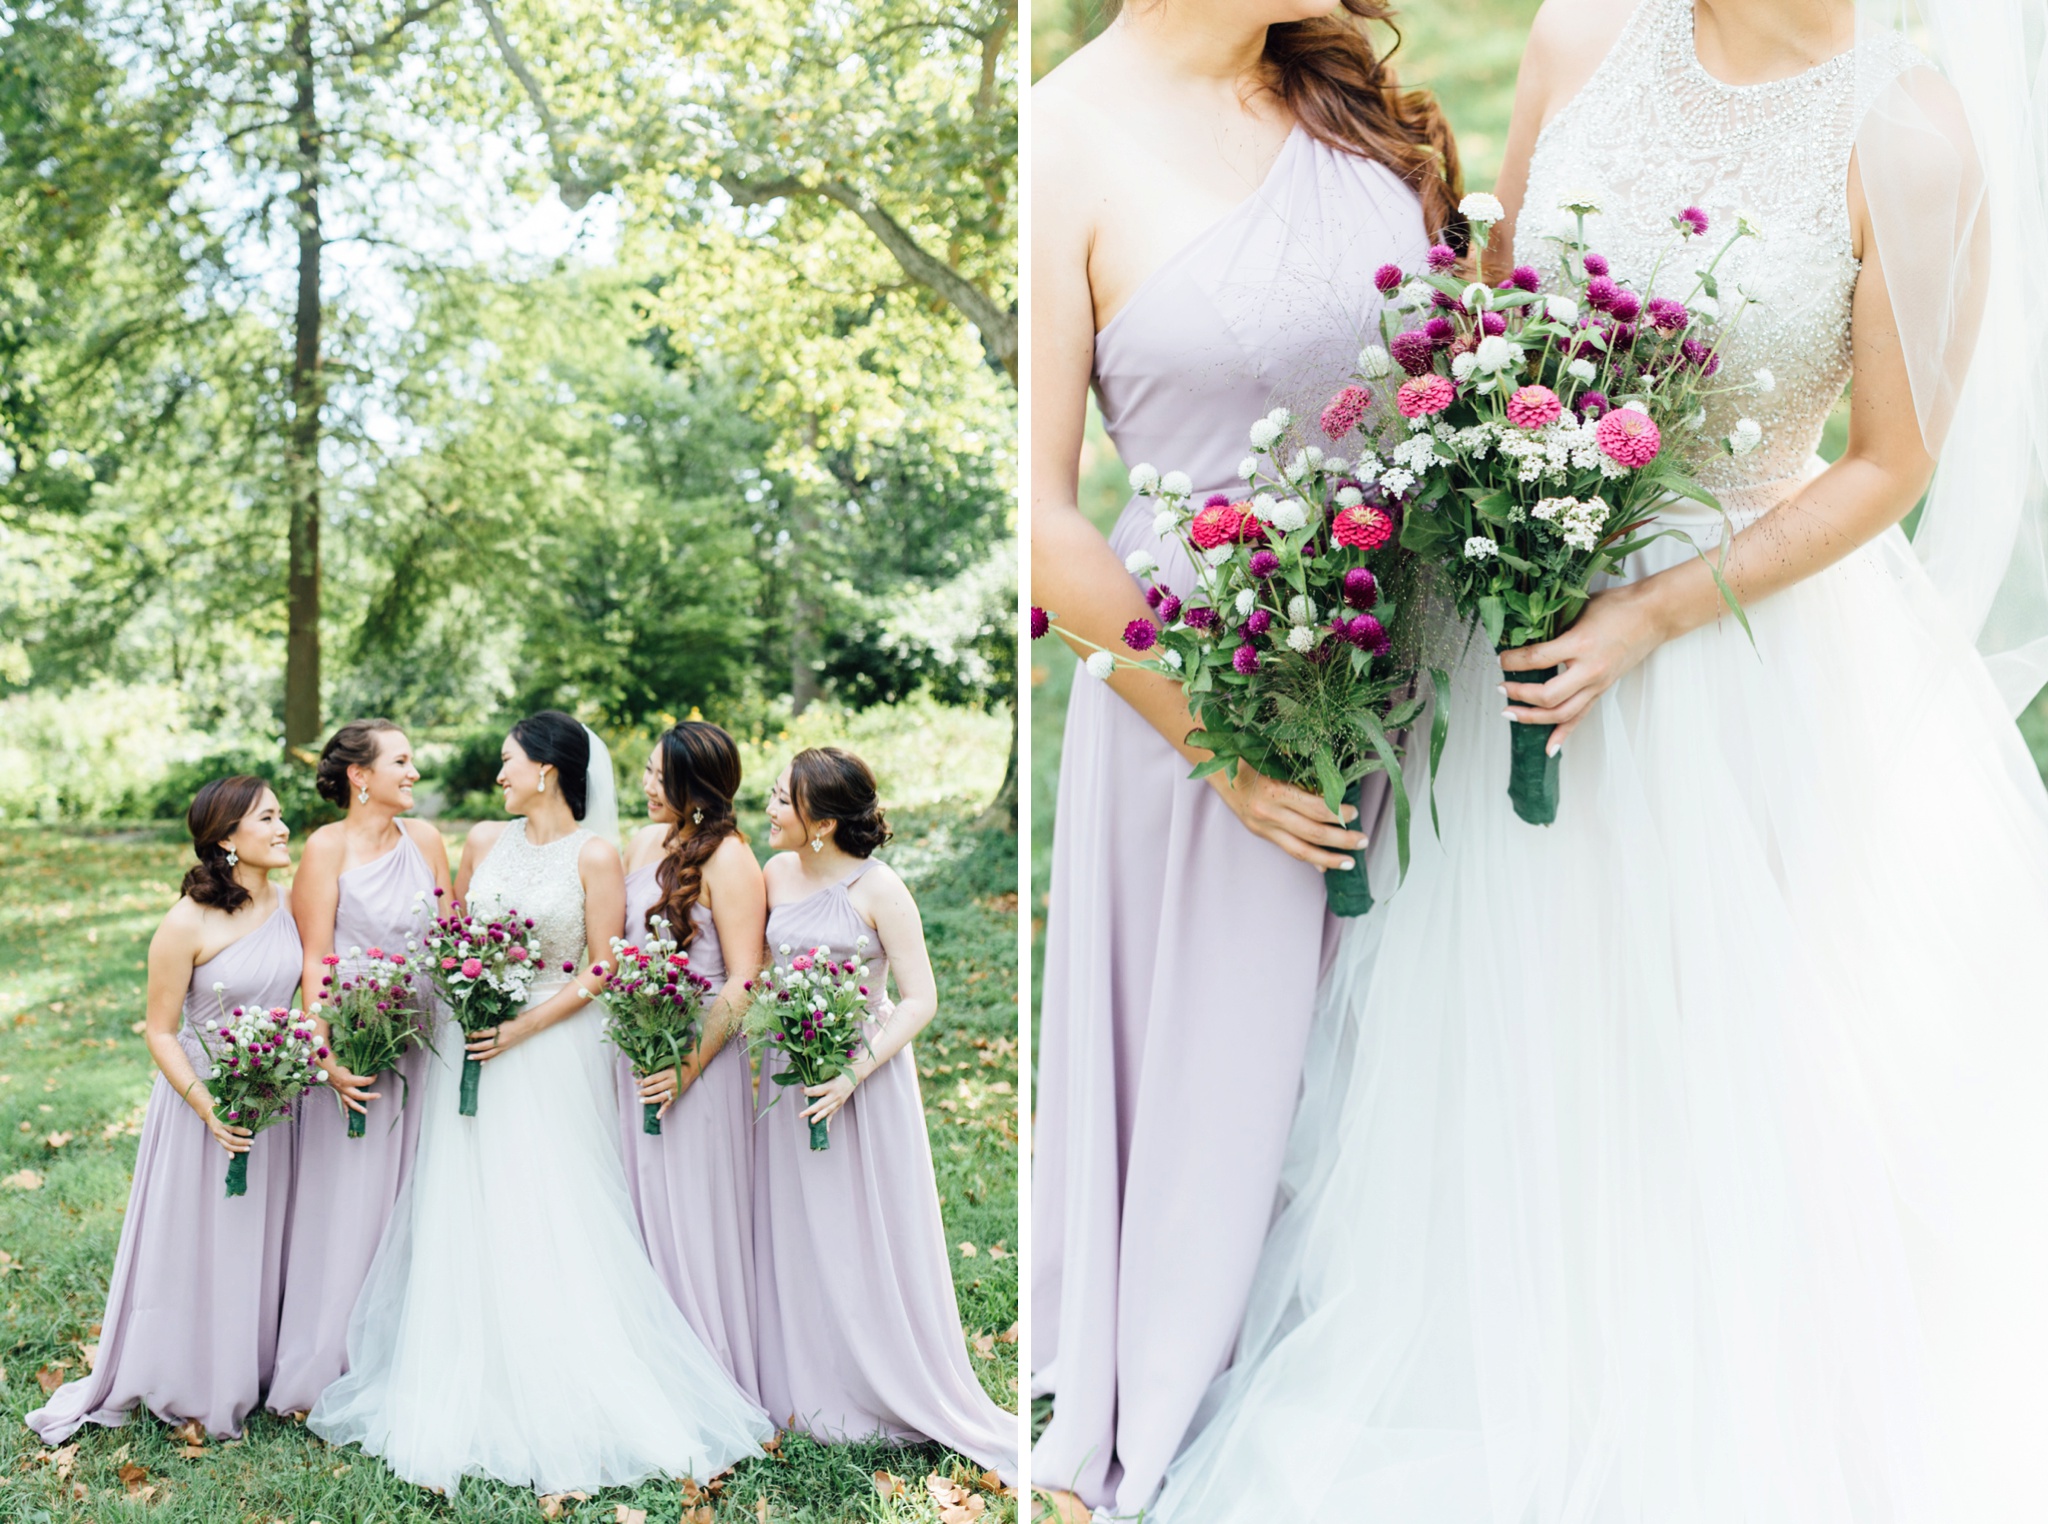 Moon + Nina - Bartram's Garden Wedding - Philadelphia Wedding Photographer - Alison Dunn Photography photo